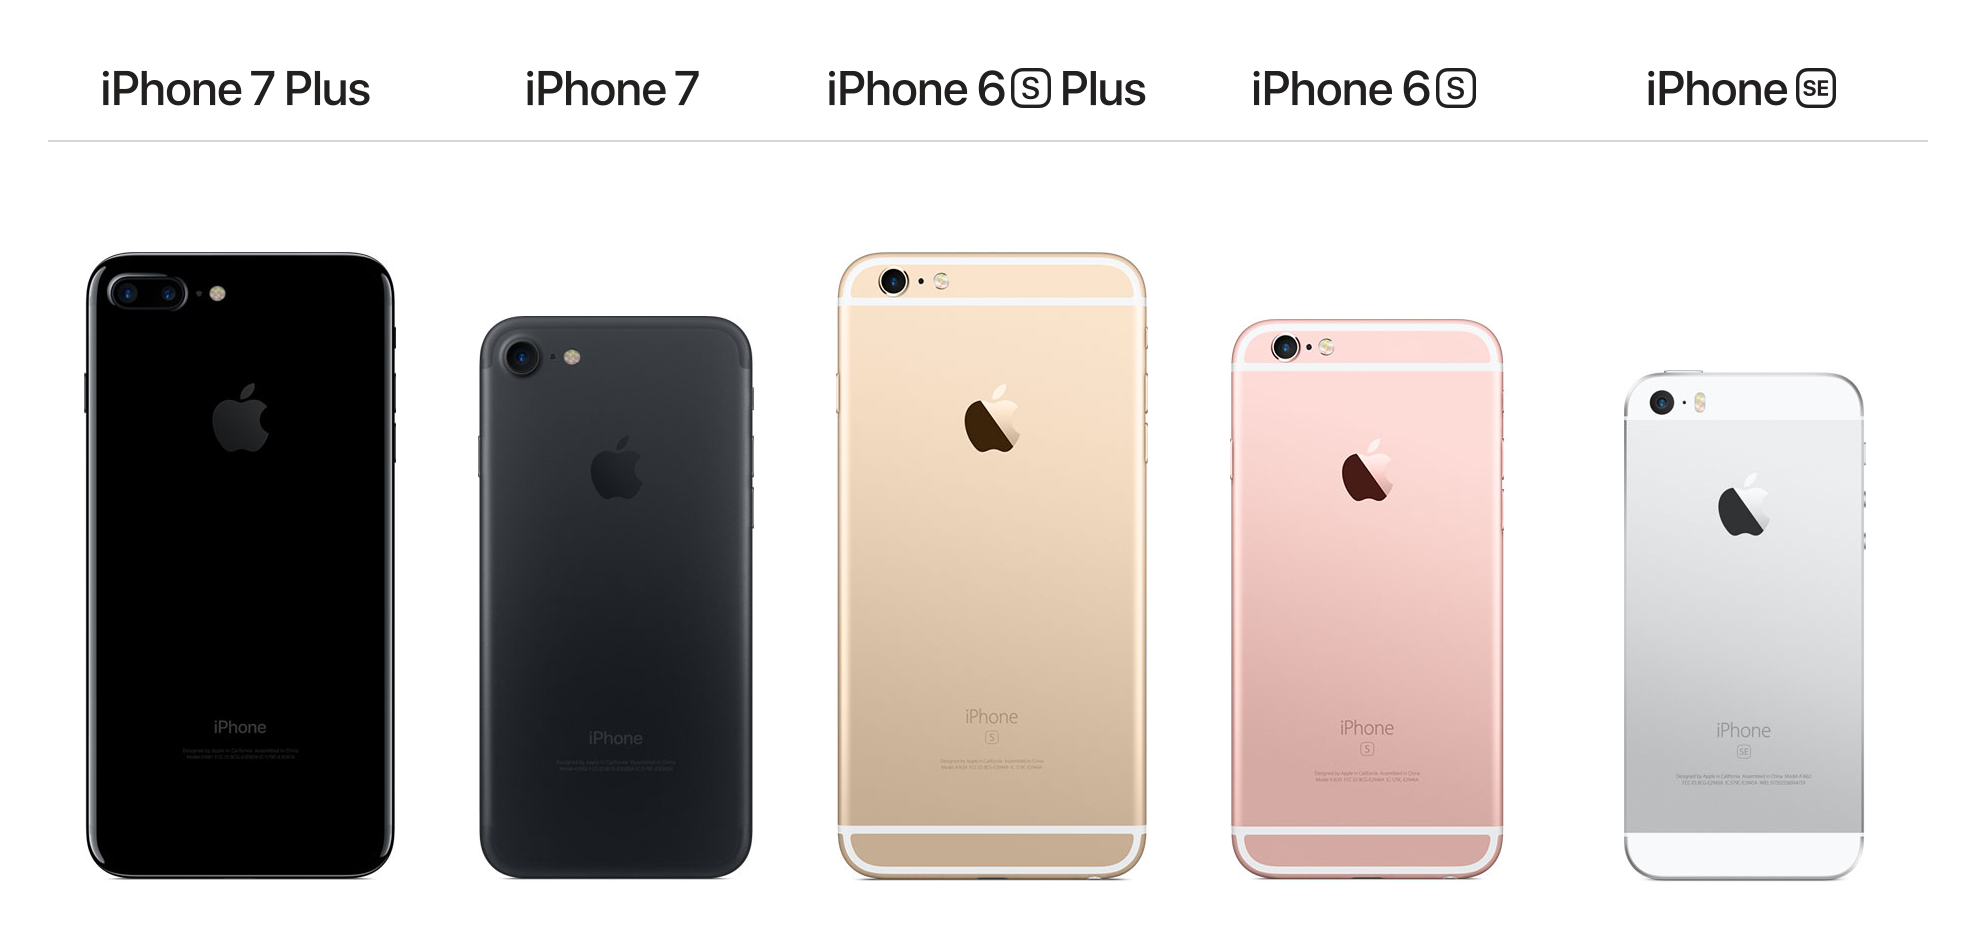 The iPhone 7, the iPhone 7 Plus, the iPhone 6 and the iPhone SE